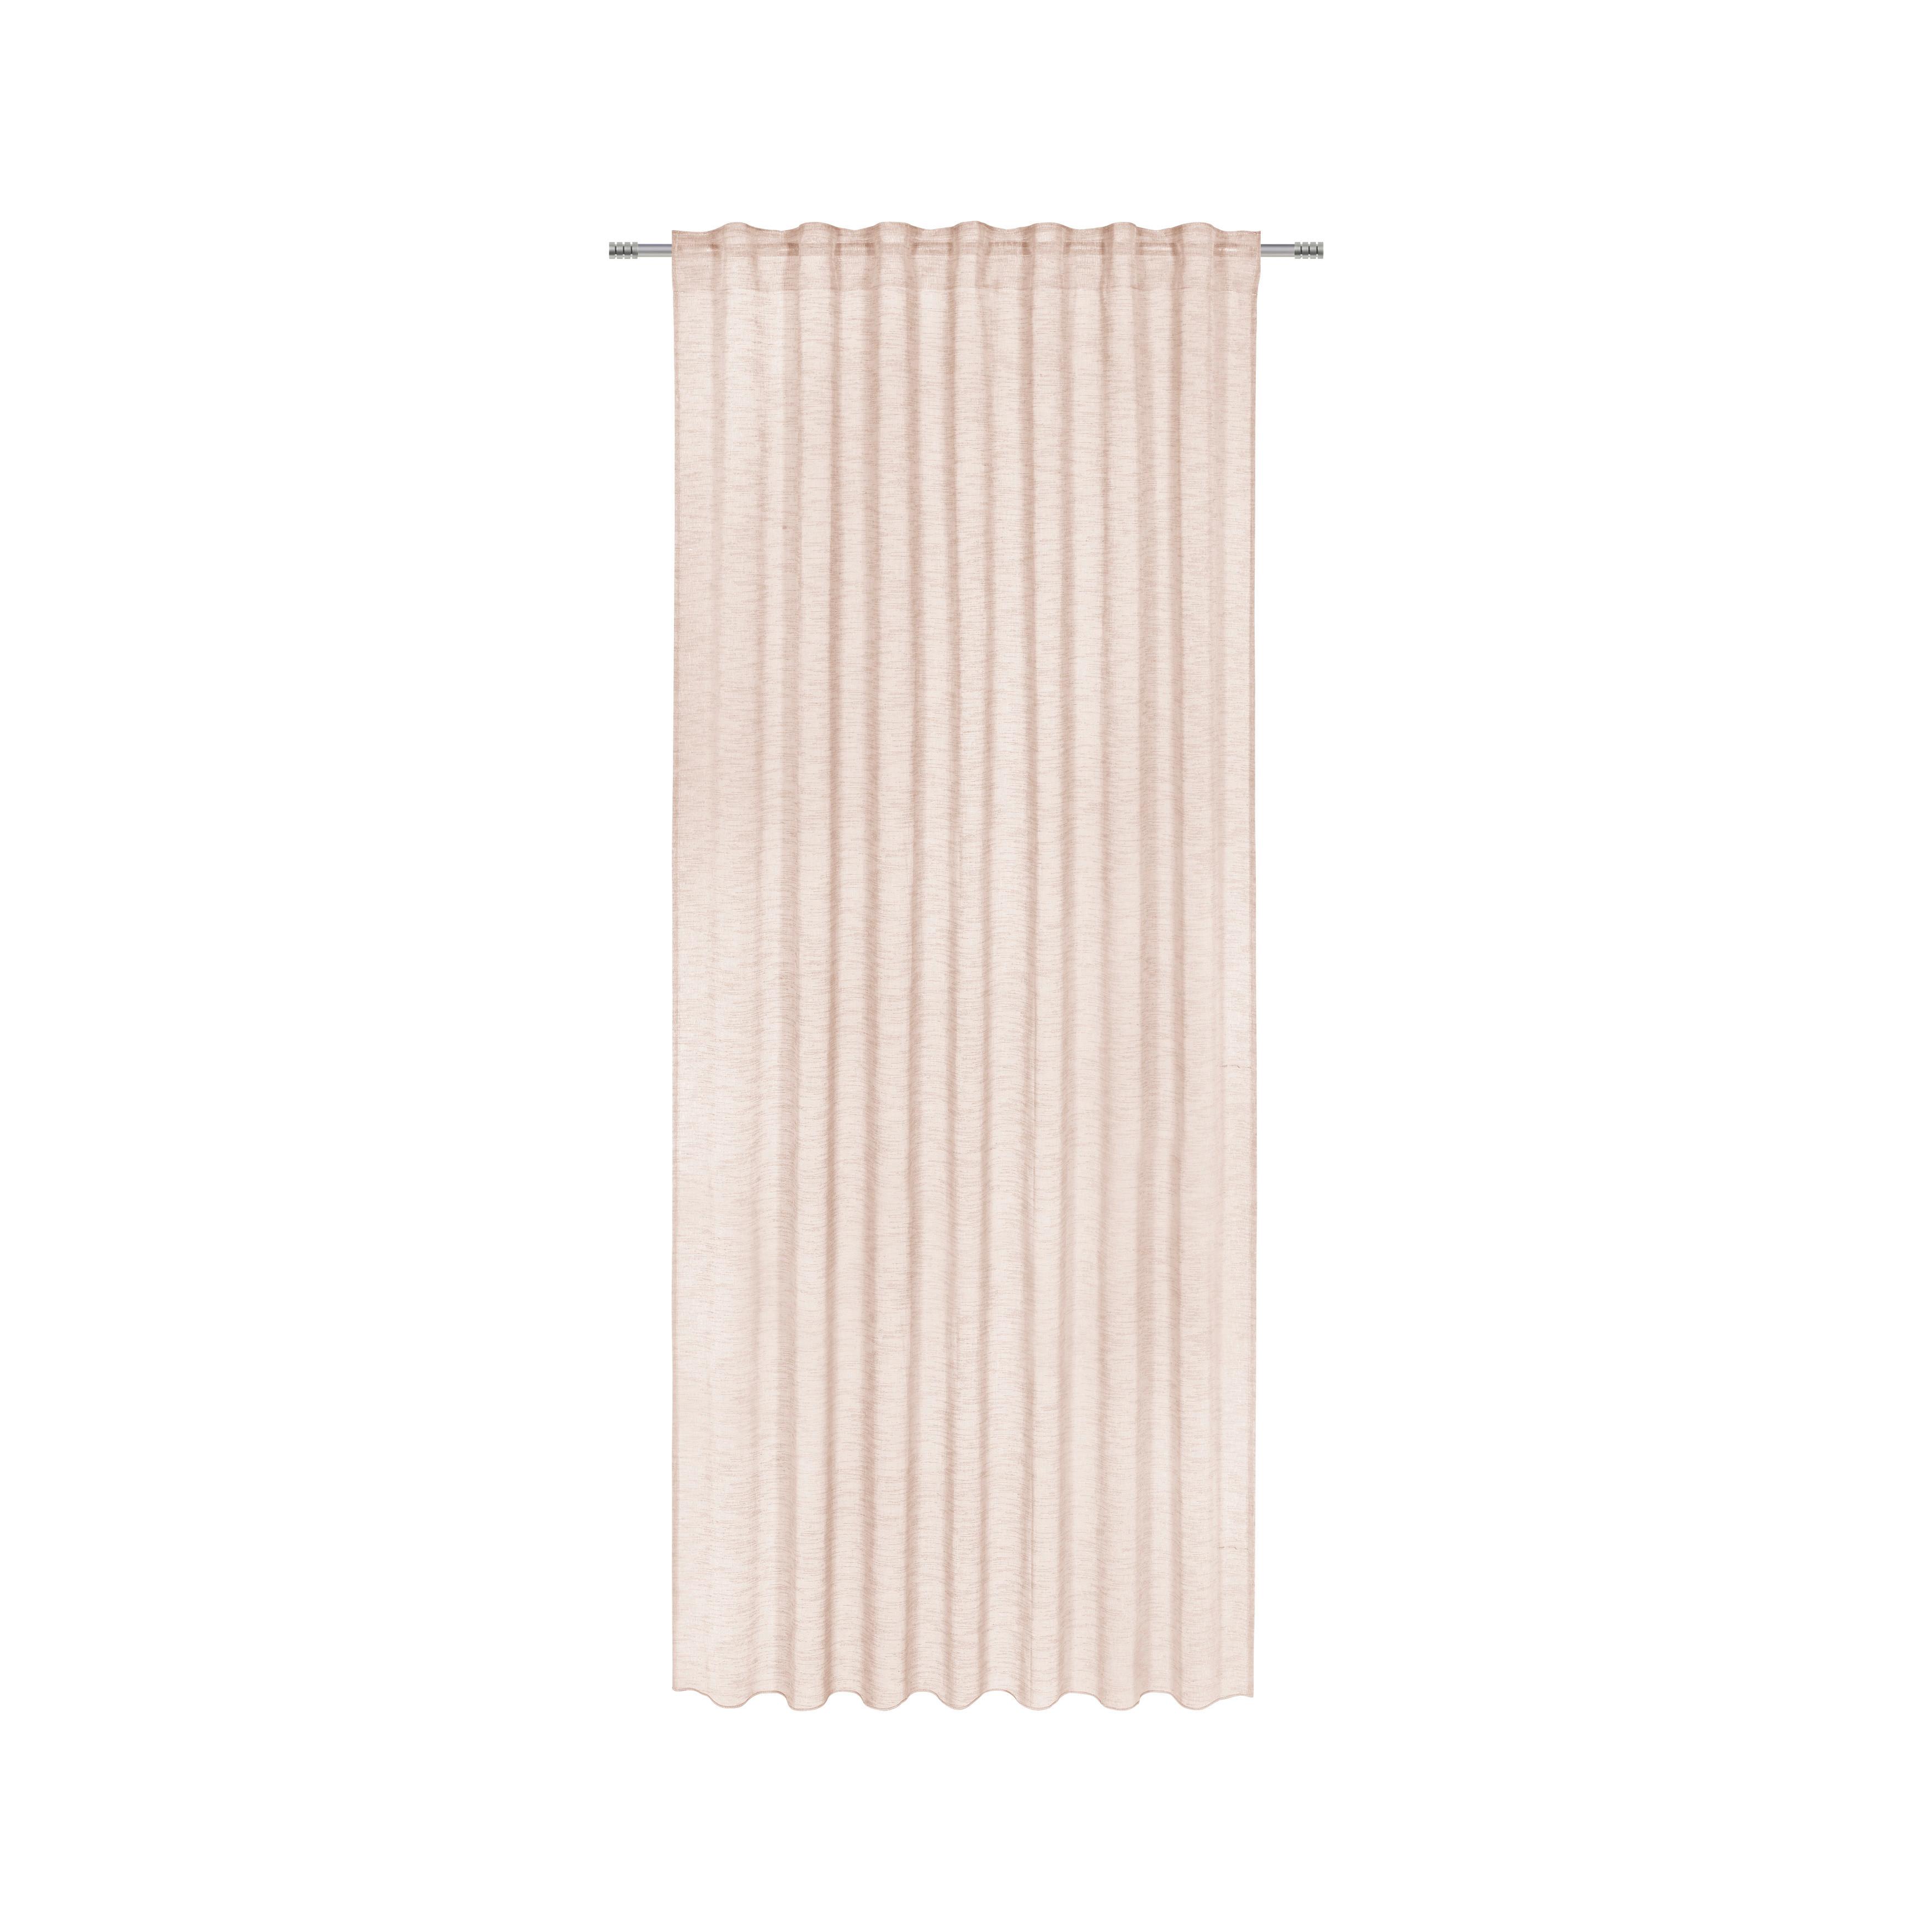 Perdea prefabricată Sigrid - roz, Romantik / Landhaus, textil (140/245cm) - Premium Living